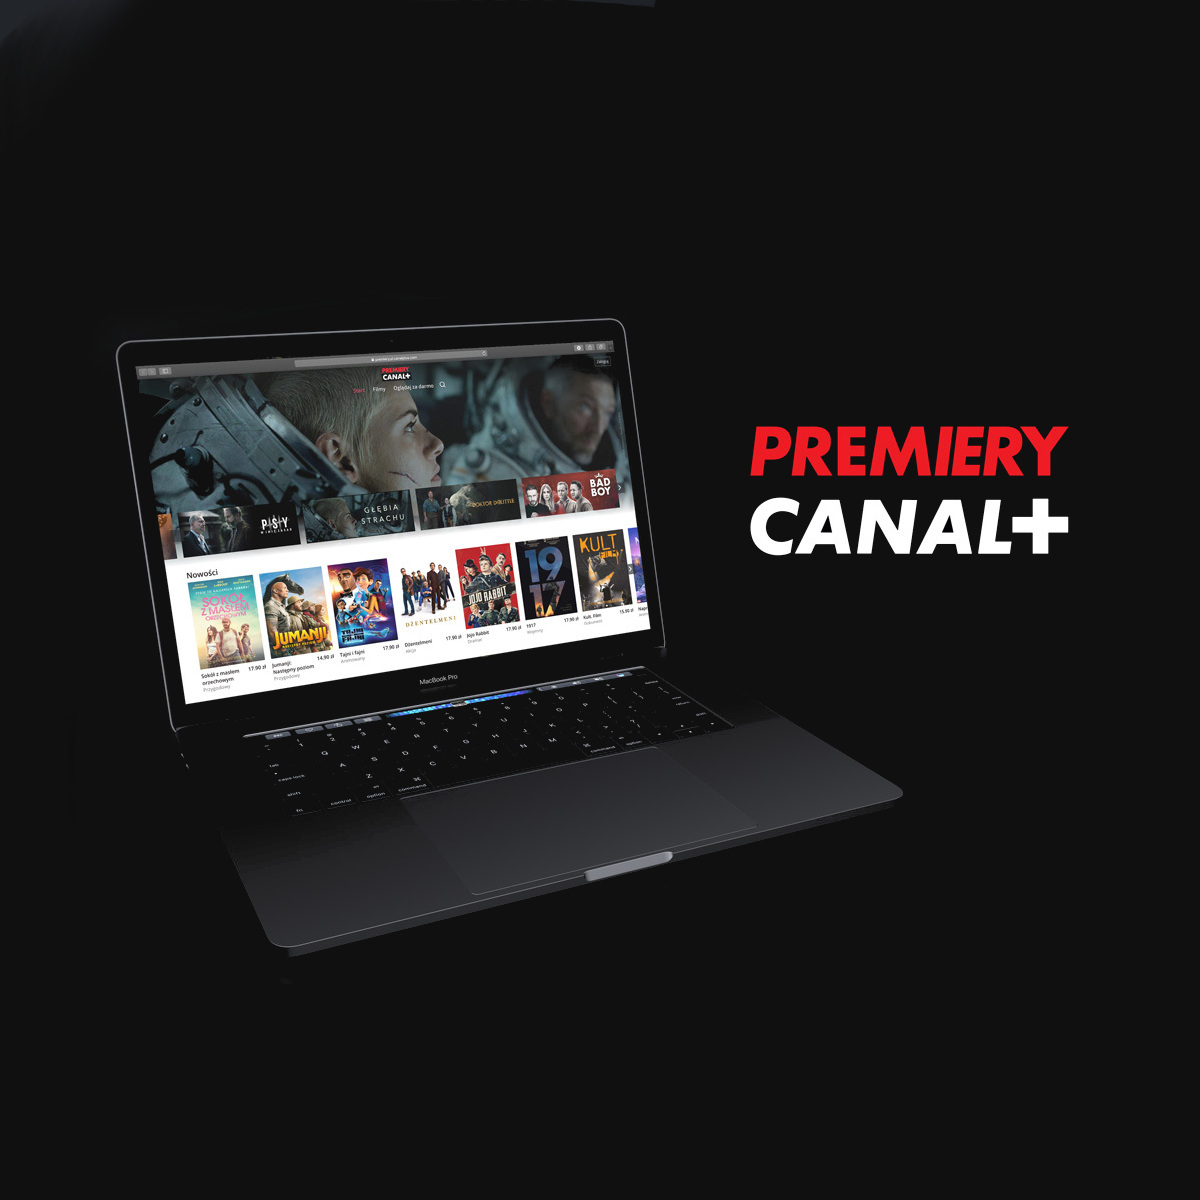 Premiery Canal+